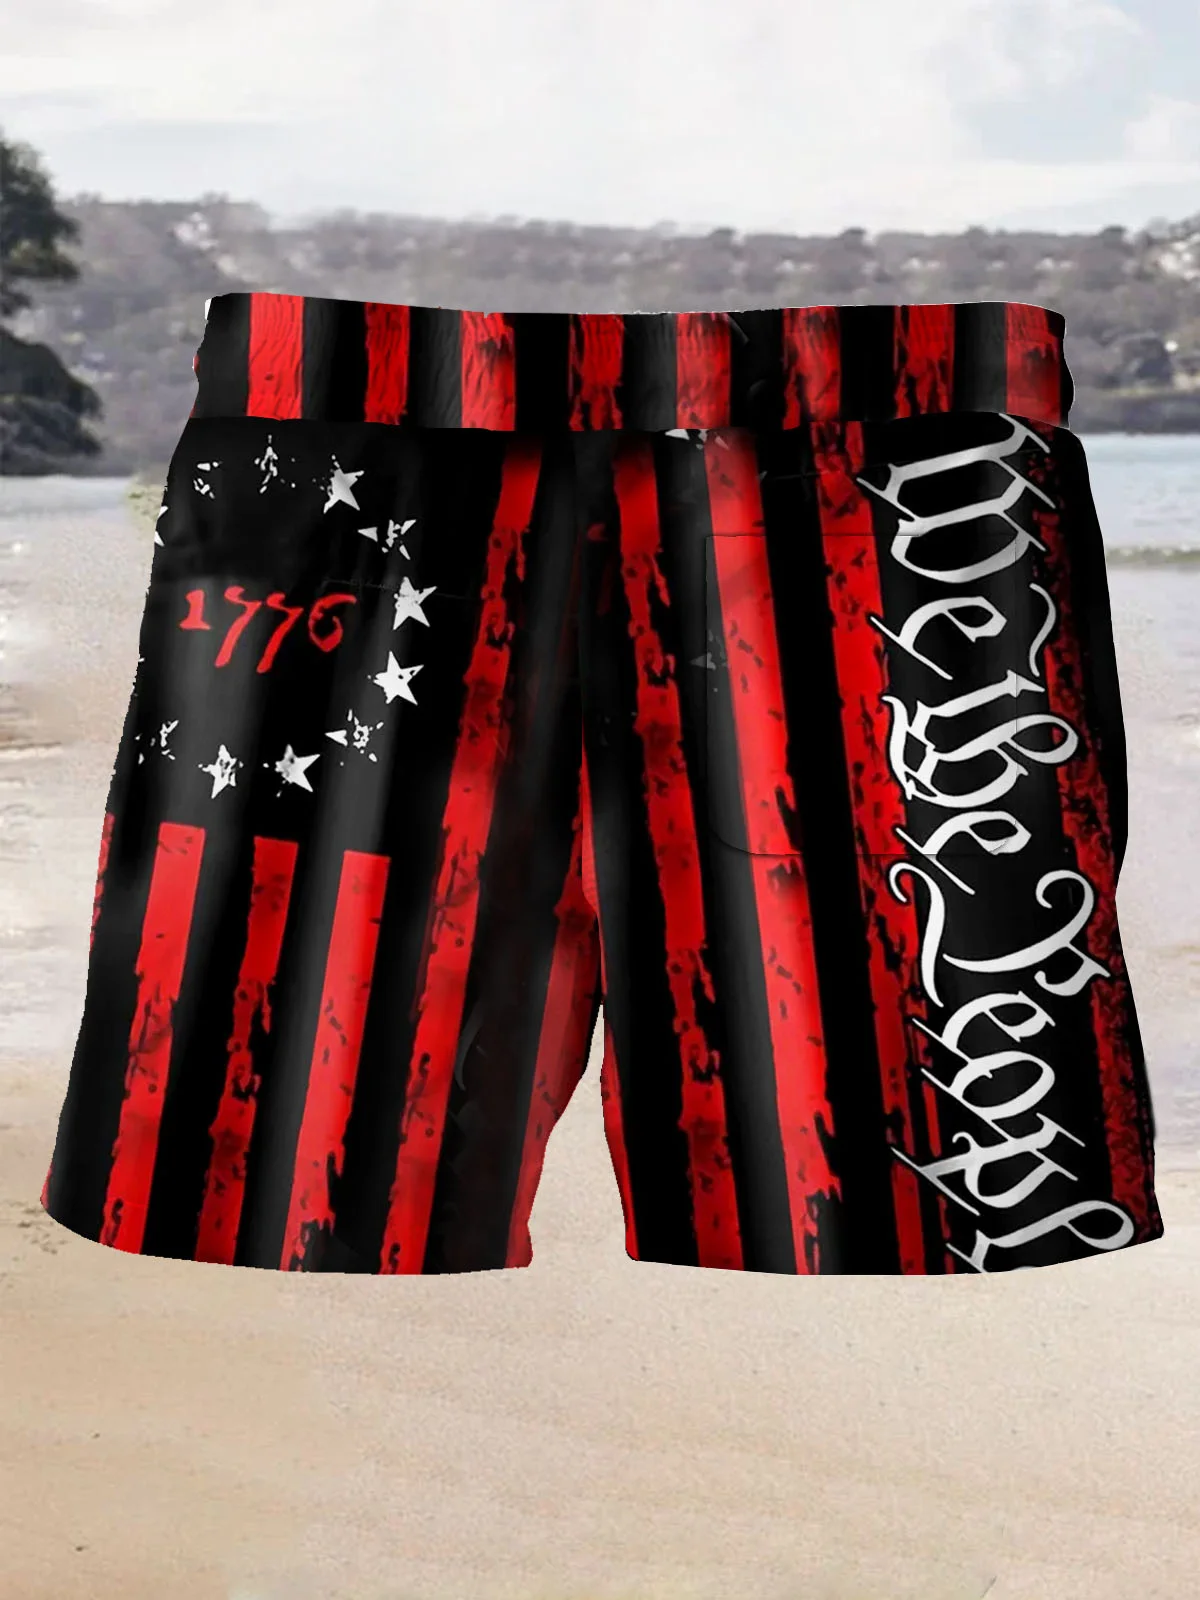 Royaura Vintage Flag 1776 Print Men's Beach Shorts Swim Trunks